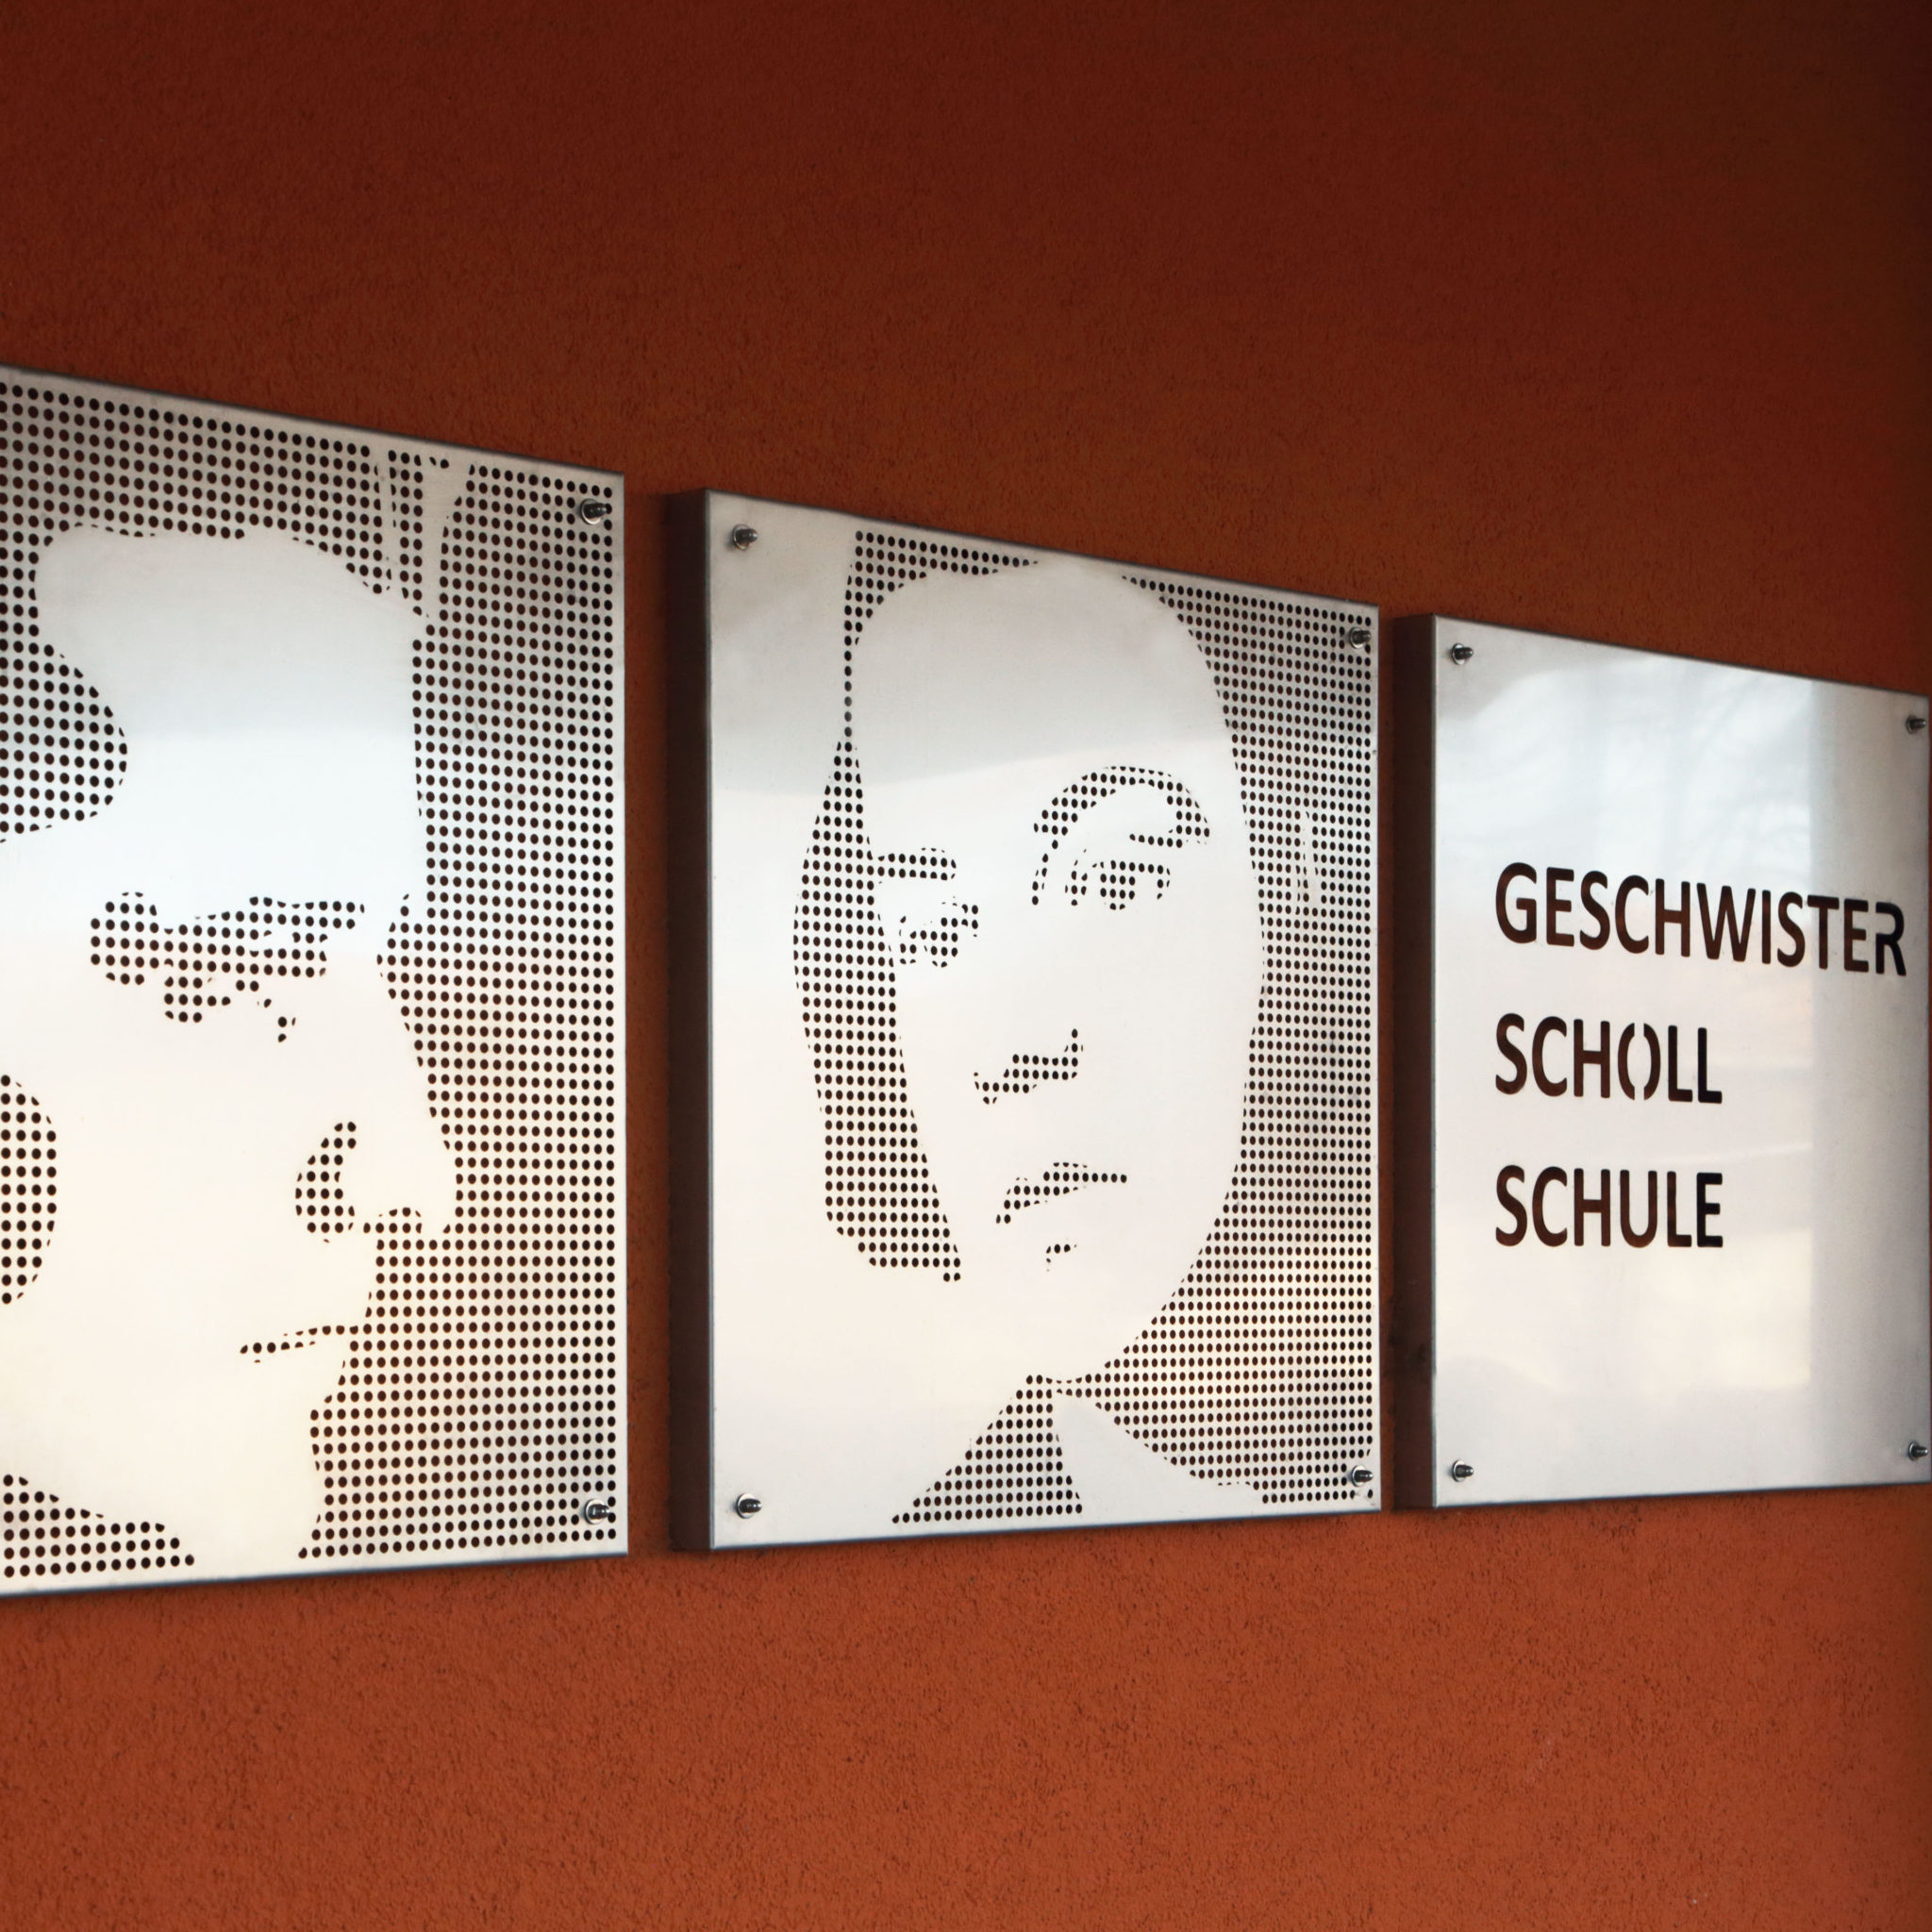 Stilisierte Porträts aus Metall von den Geschwister Scholl an einer Schule in Weißensee.